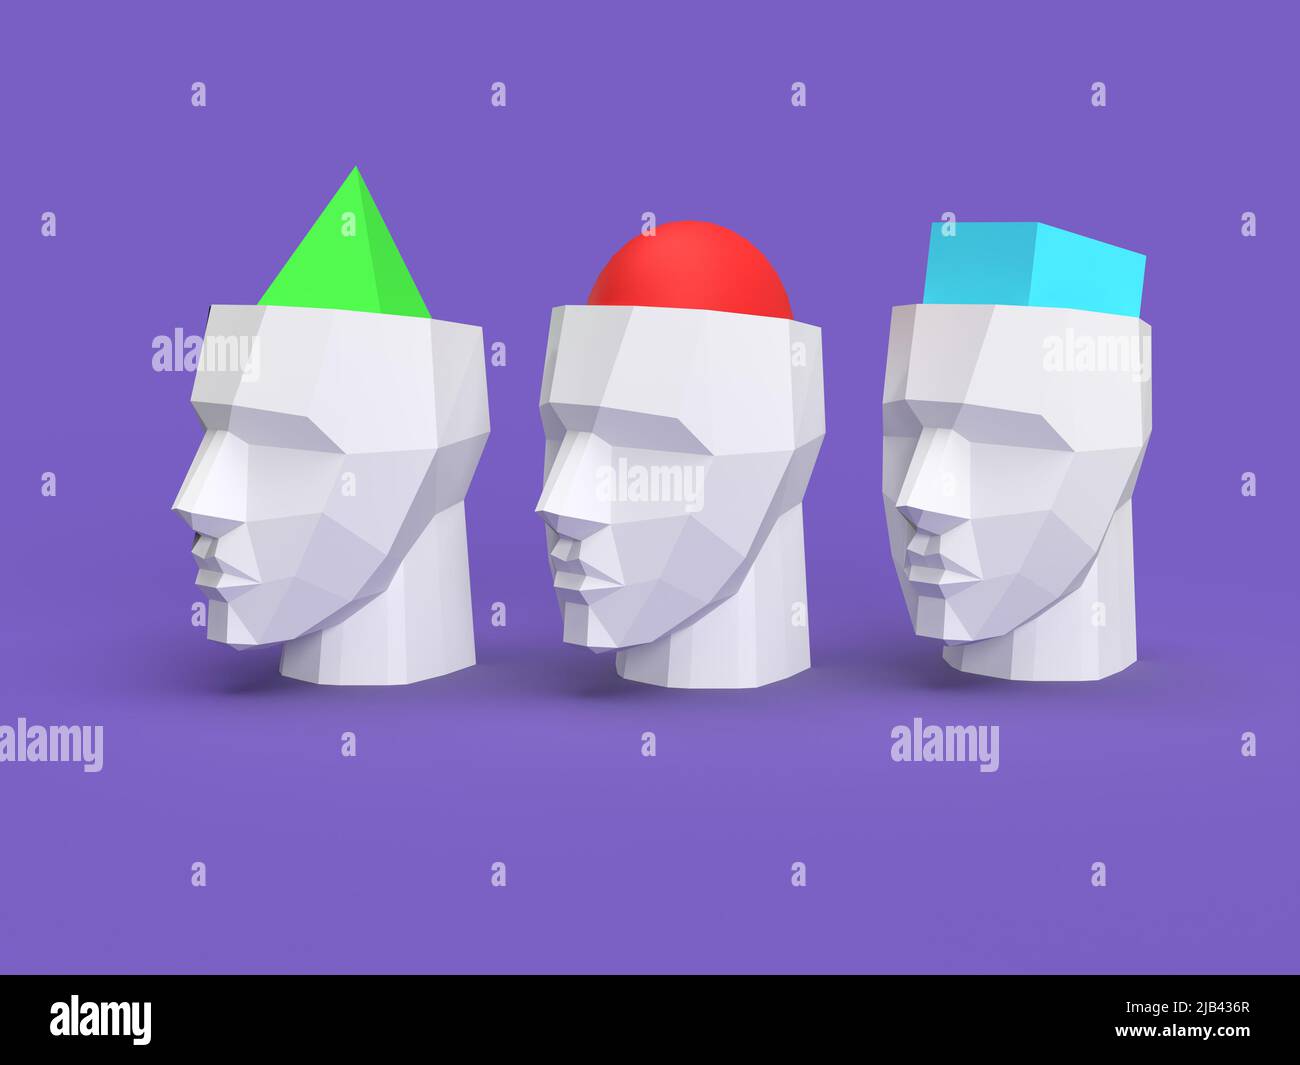 diversidad de opinión: personas con diferentes convicciones 3d cabezas de ilustración llenas de diferentes figuras geométricas Foto de stock